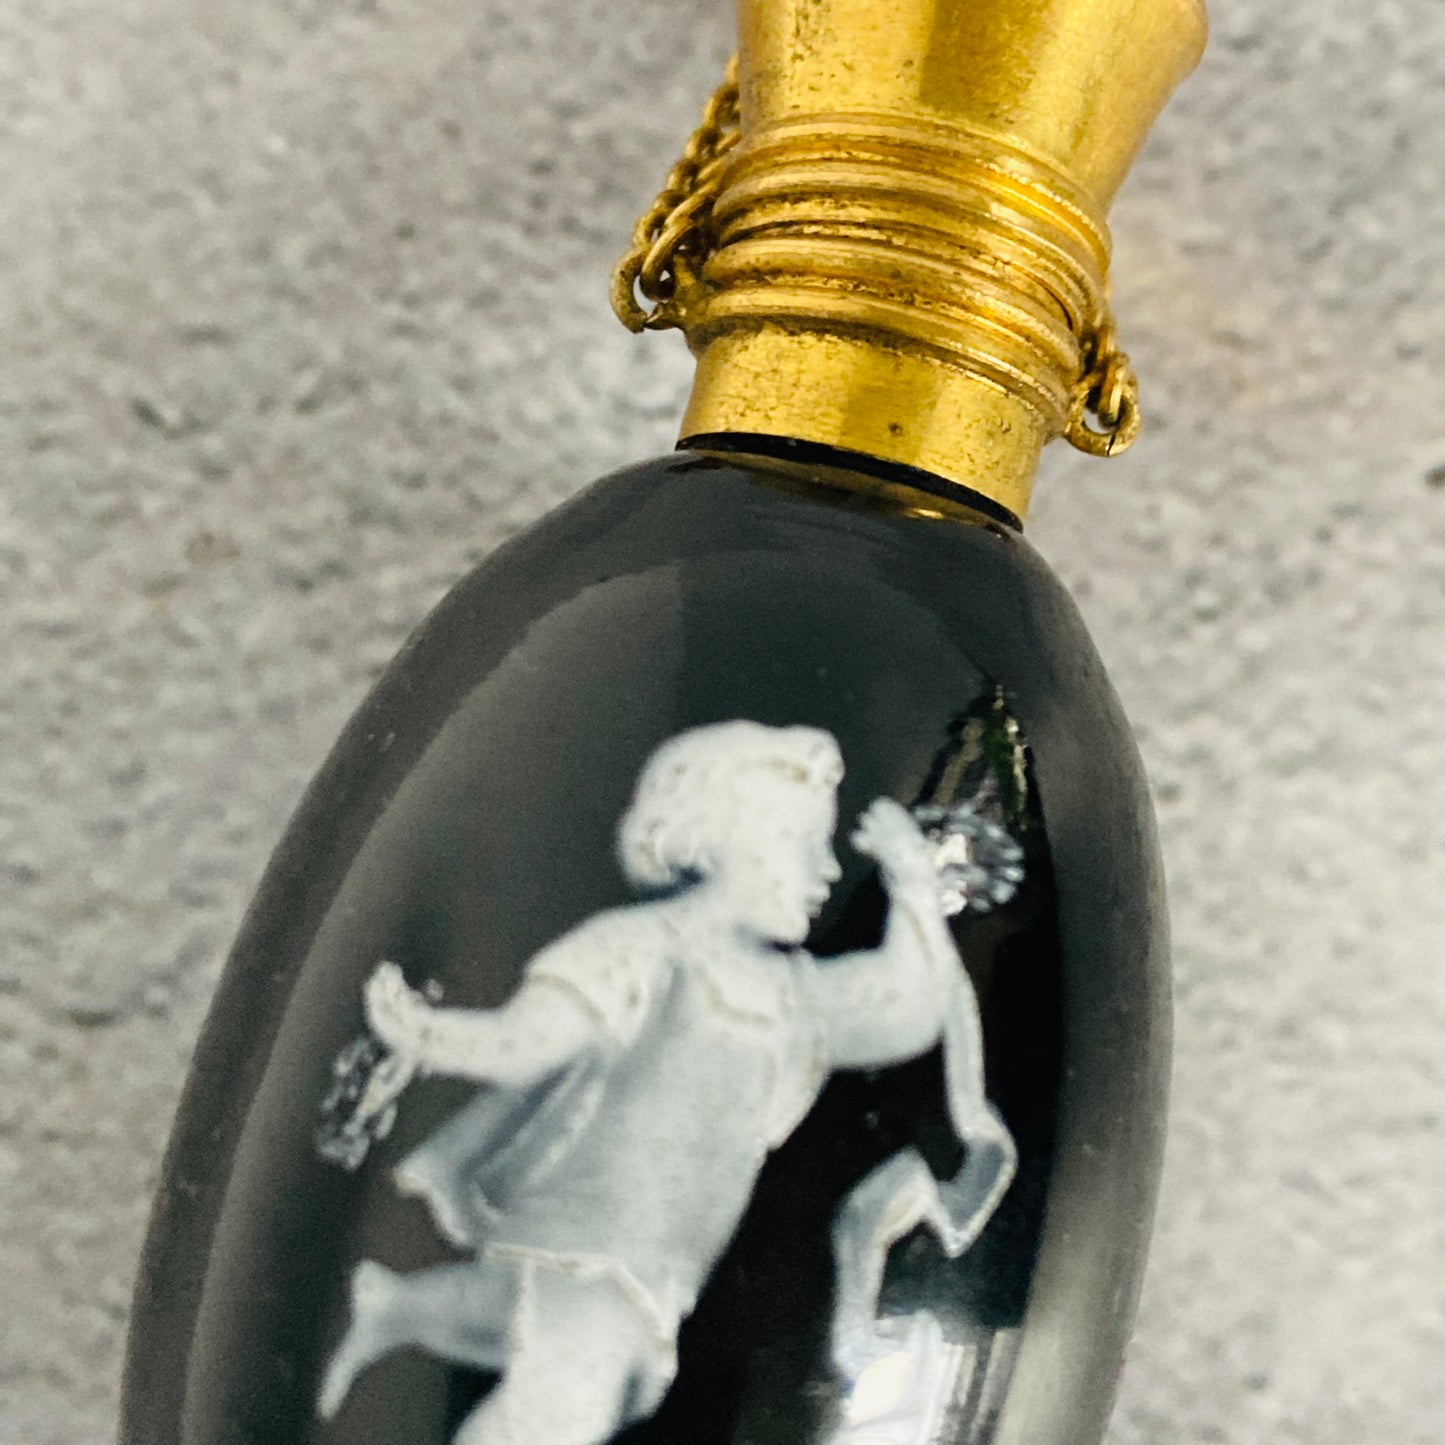 The Artist Donald - Antique Black Glass Scent Bottle